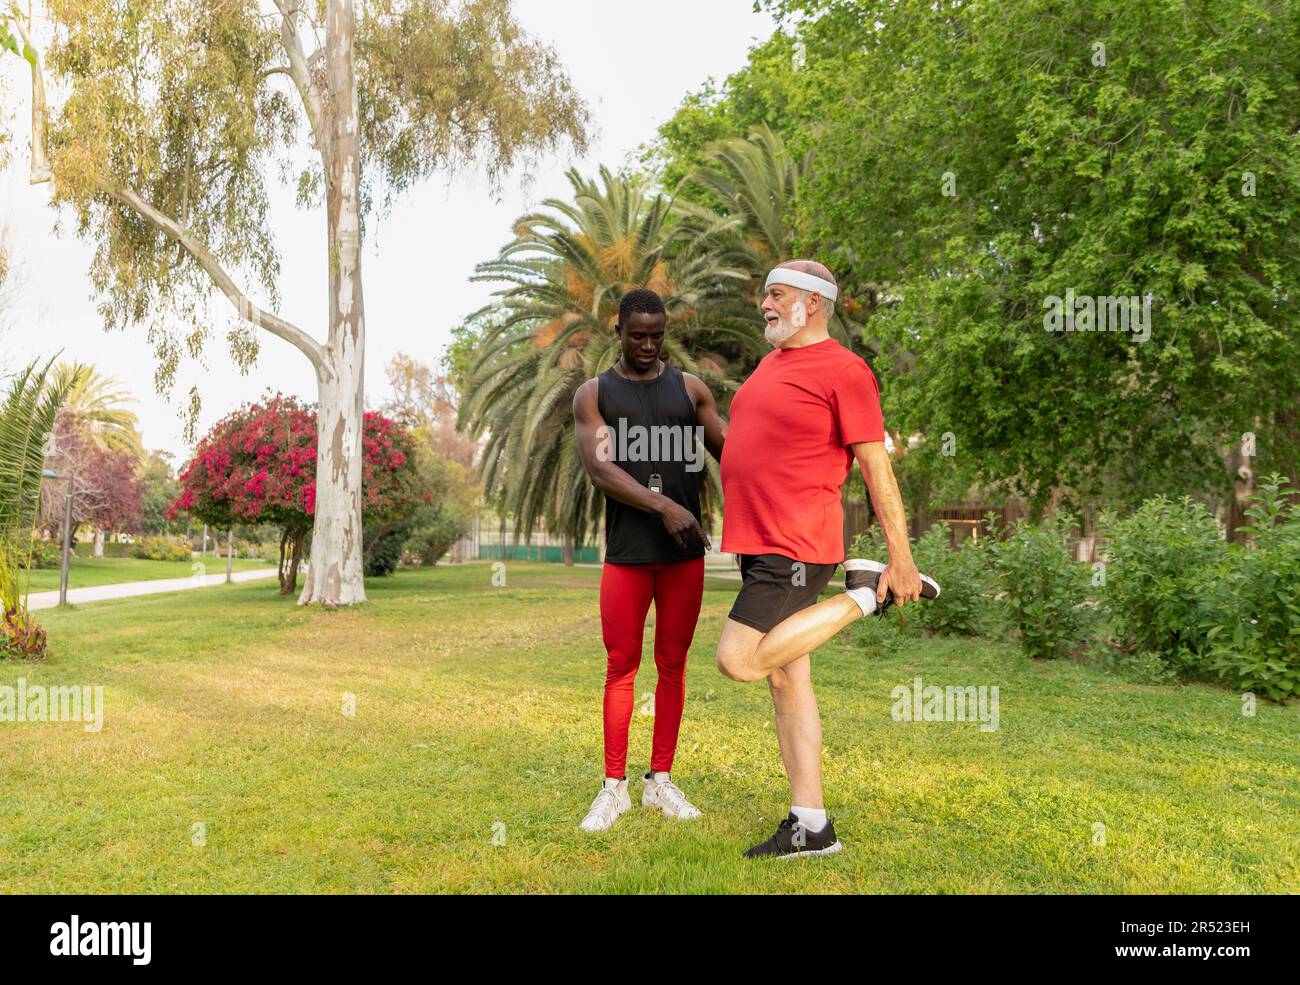 Ganzkörper-Senior-Sportler in Sportbekleidung streckt sich vor dem Training die Beine, während er mit einem afroamerikanischen Lehrer im Park auf dem Rasen trainiert Stockfoto